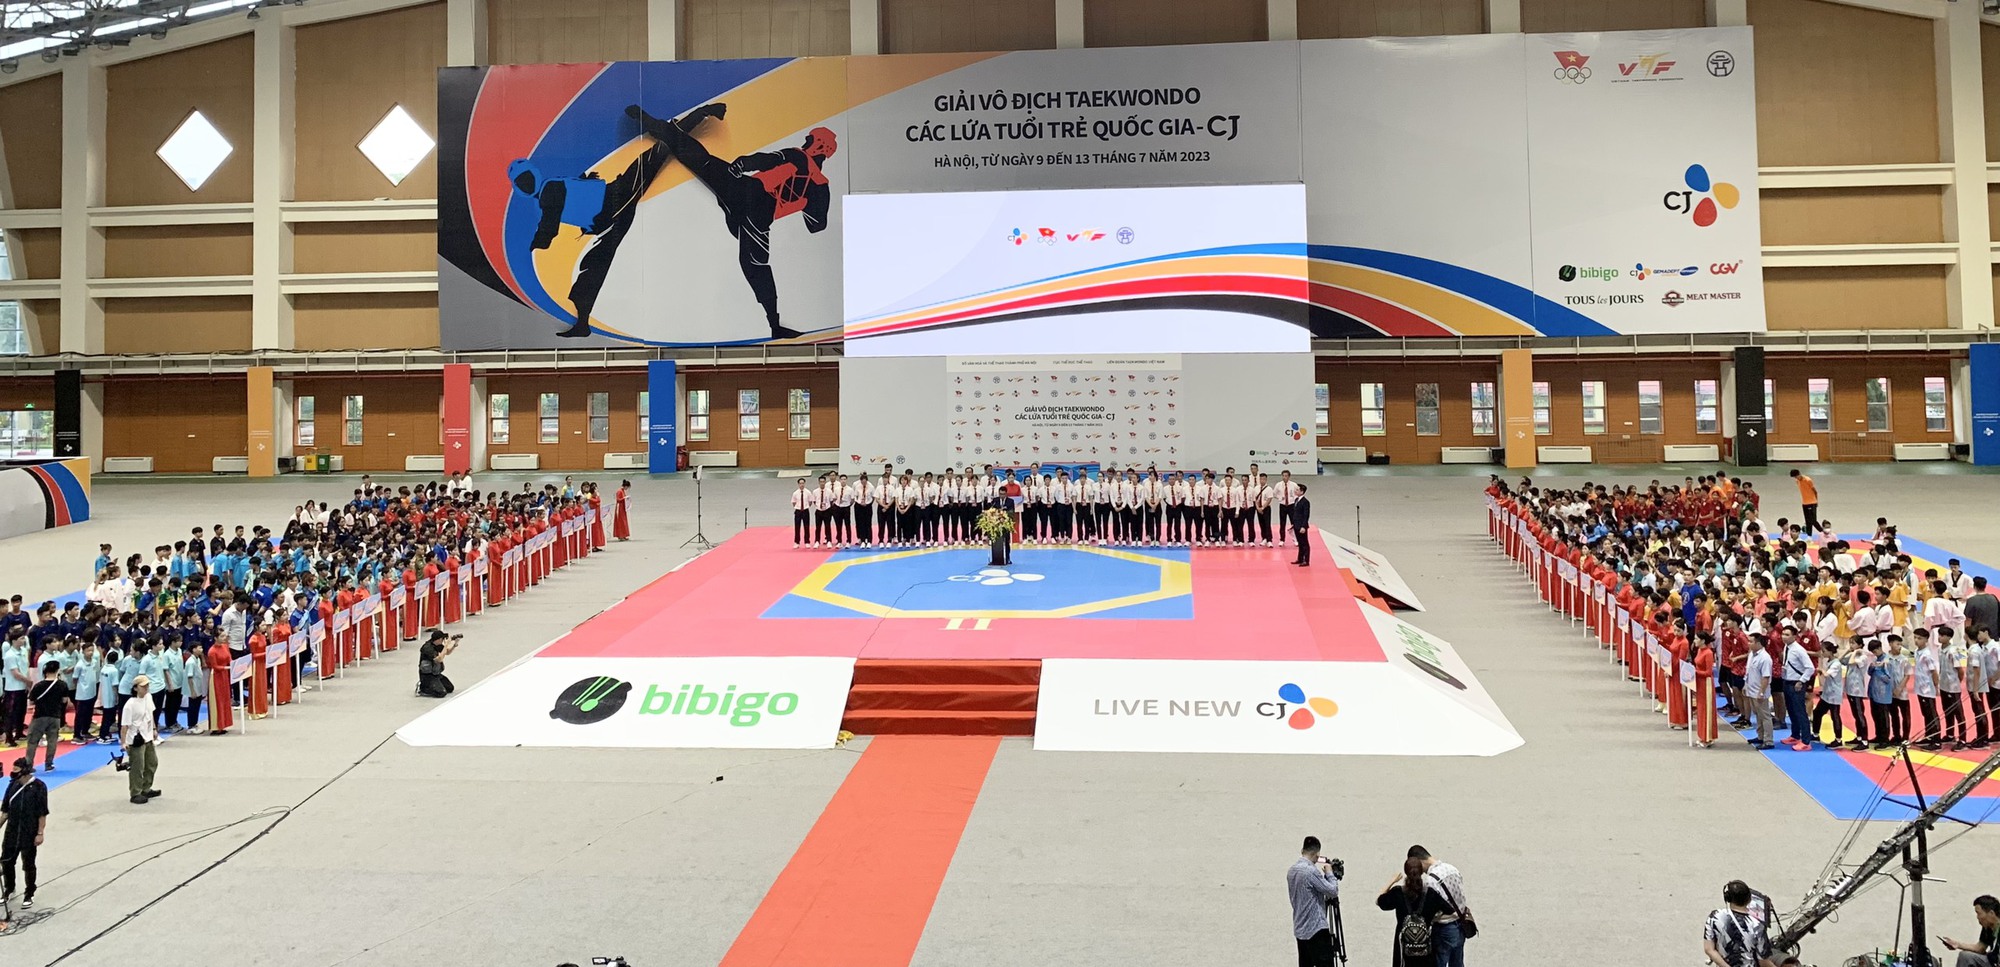 Khai mạc Giải Vô địch Taekwondo các lứa tuổi trẻ quốc gia năm 2023 - Ảnh 1.